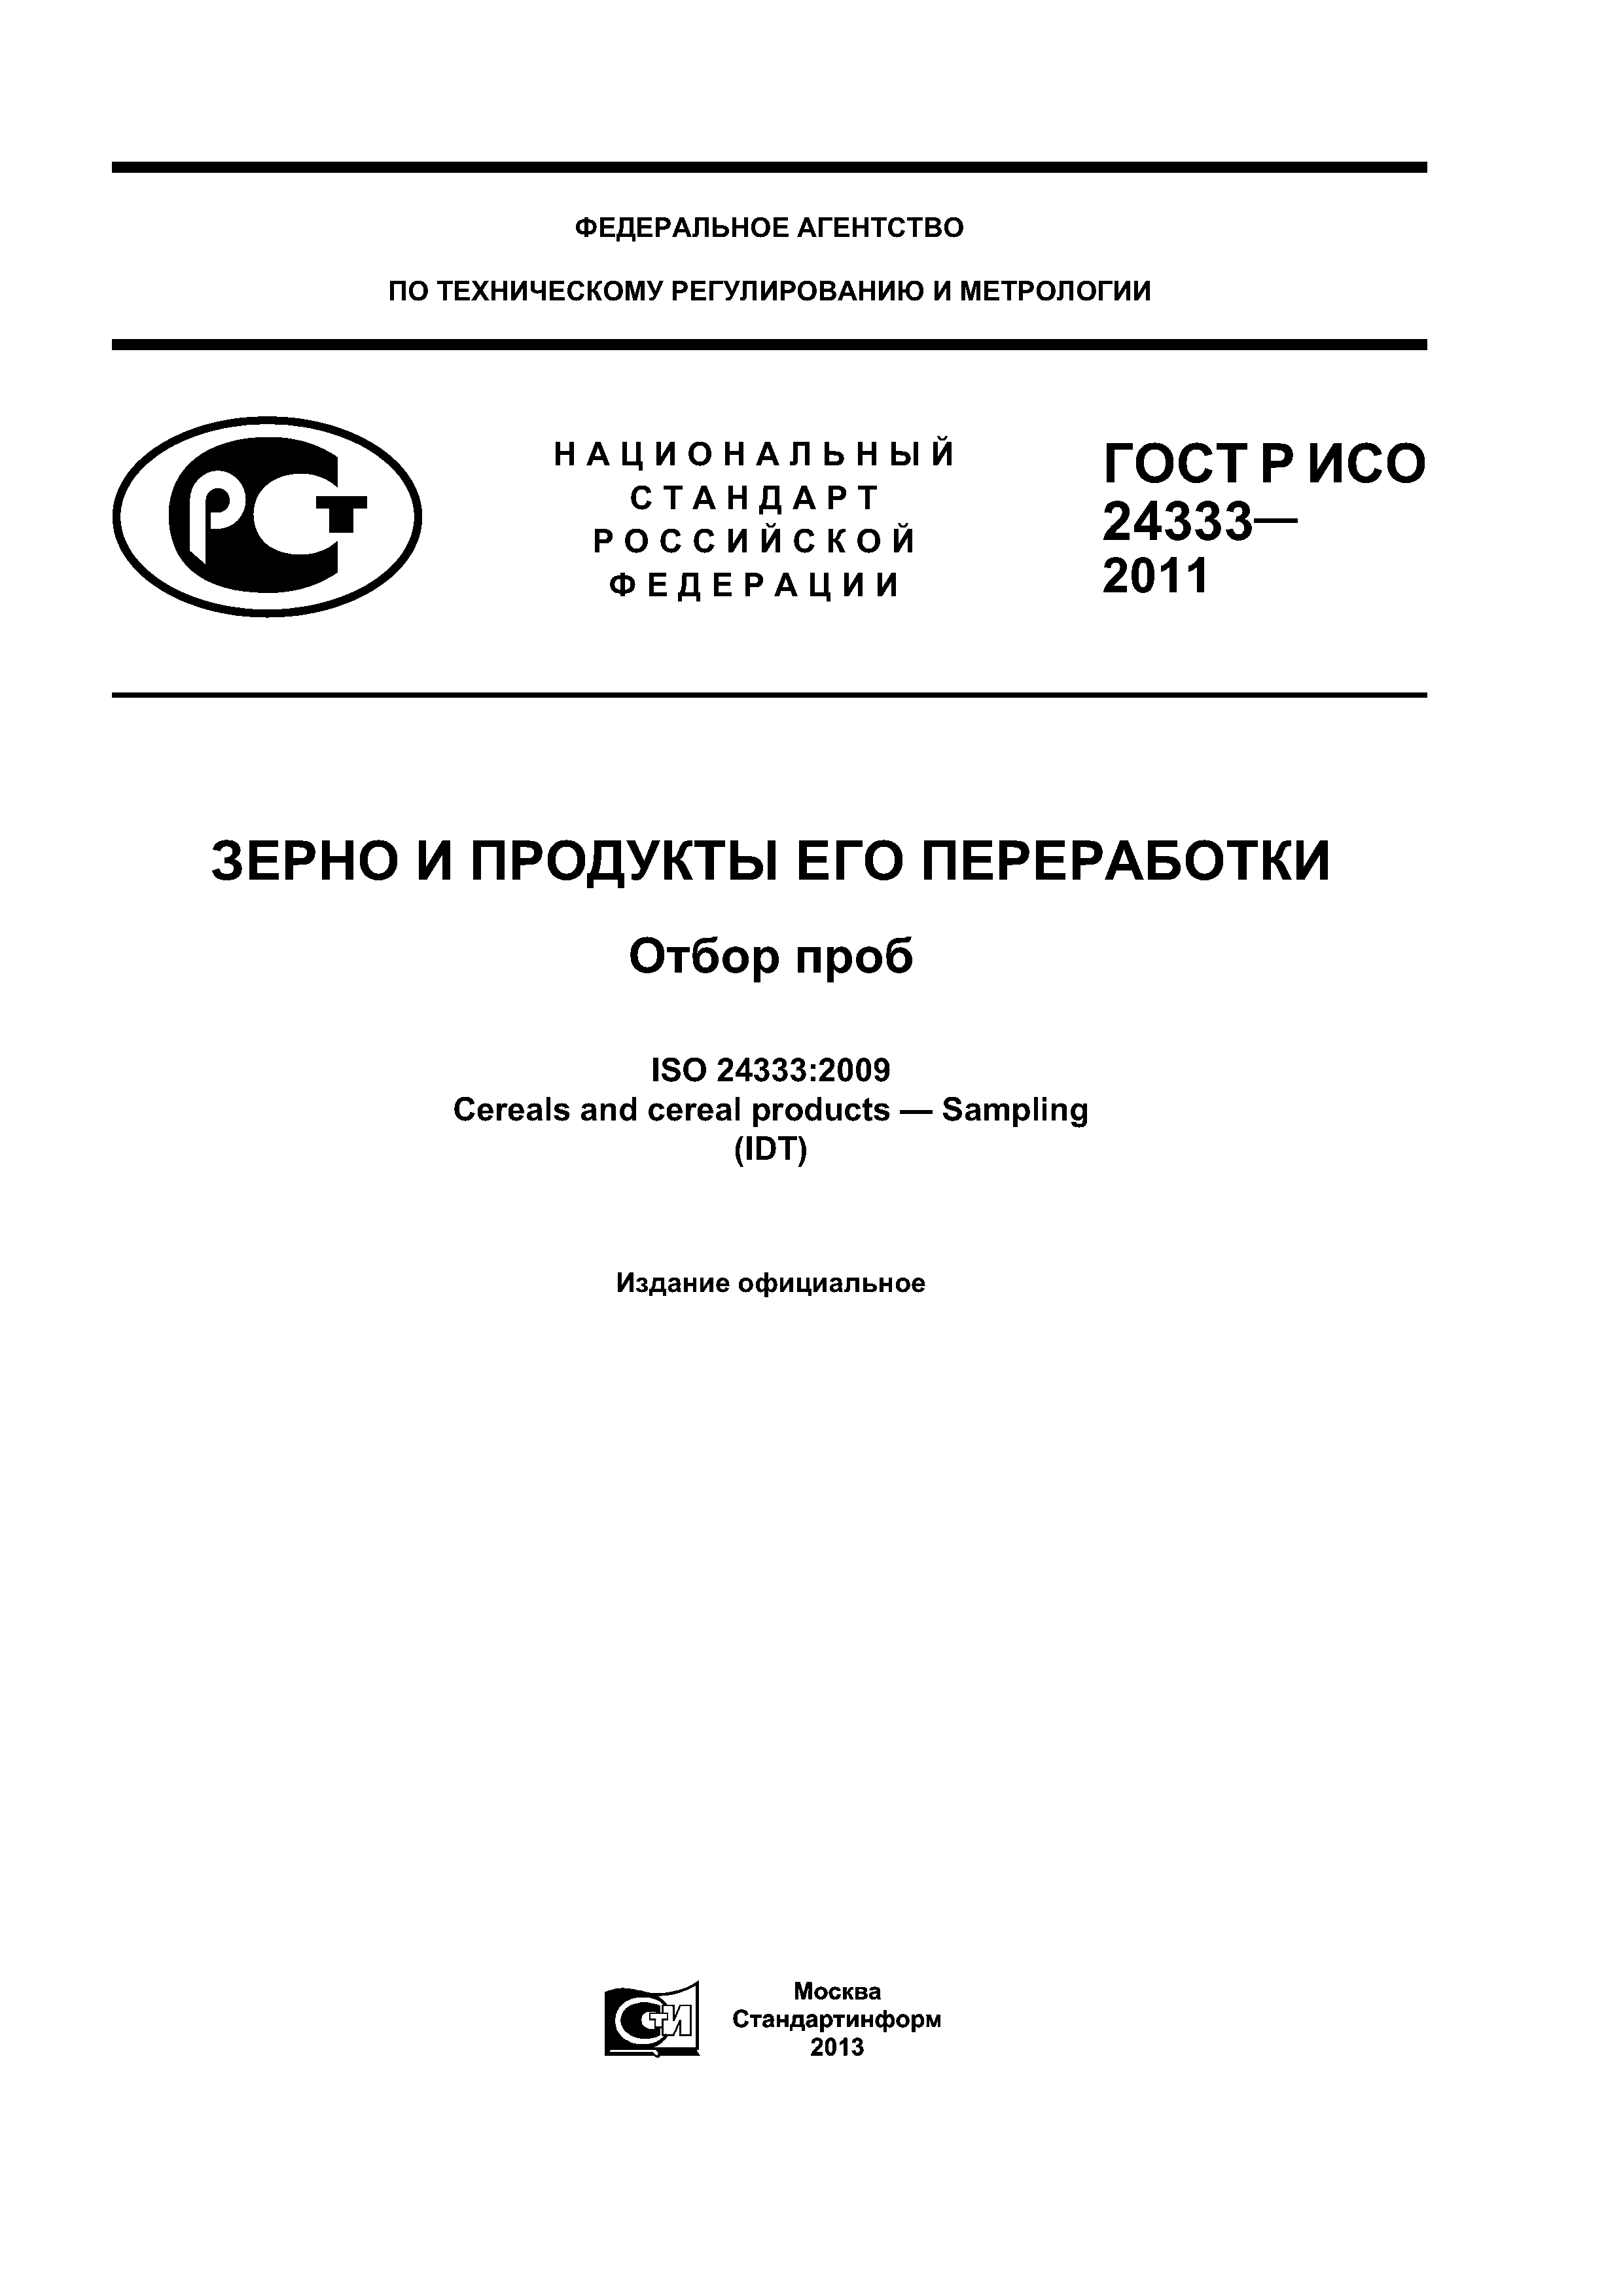 ГОСТ Р ИСО 24333-2011